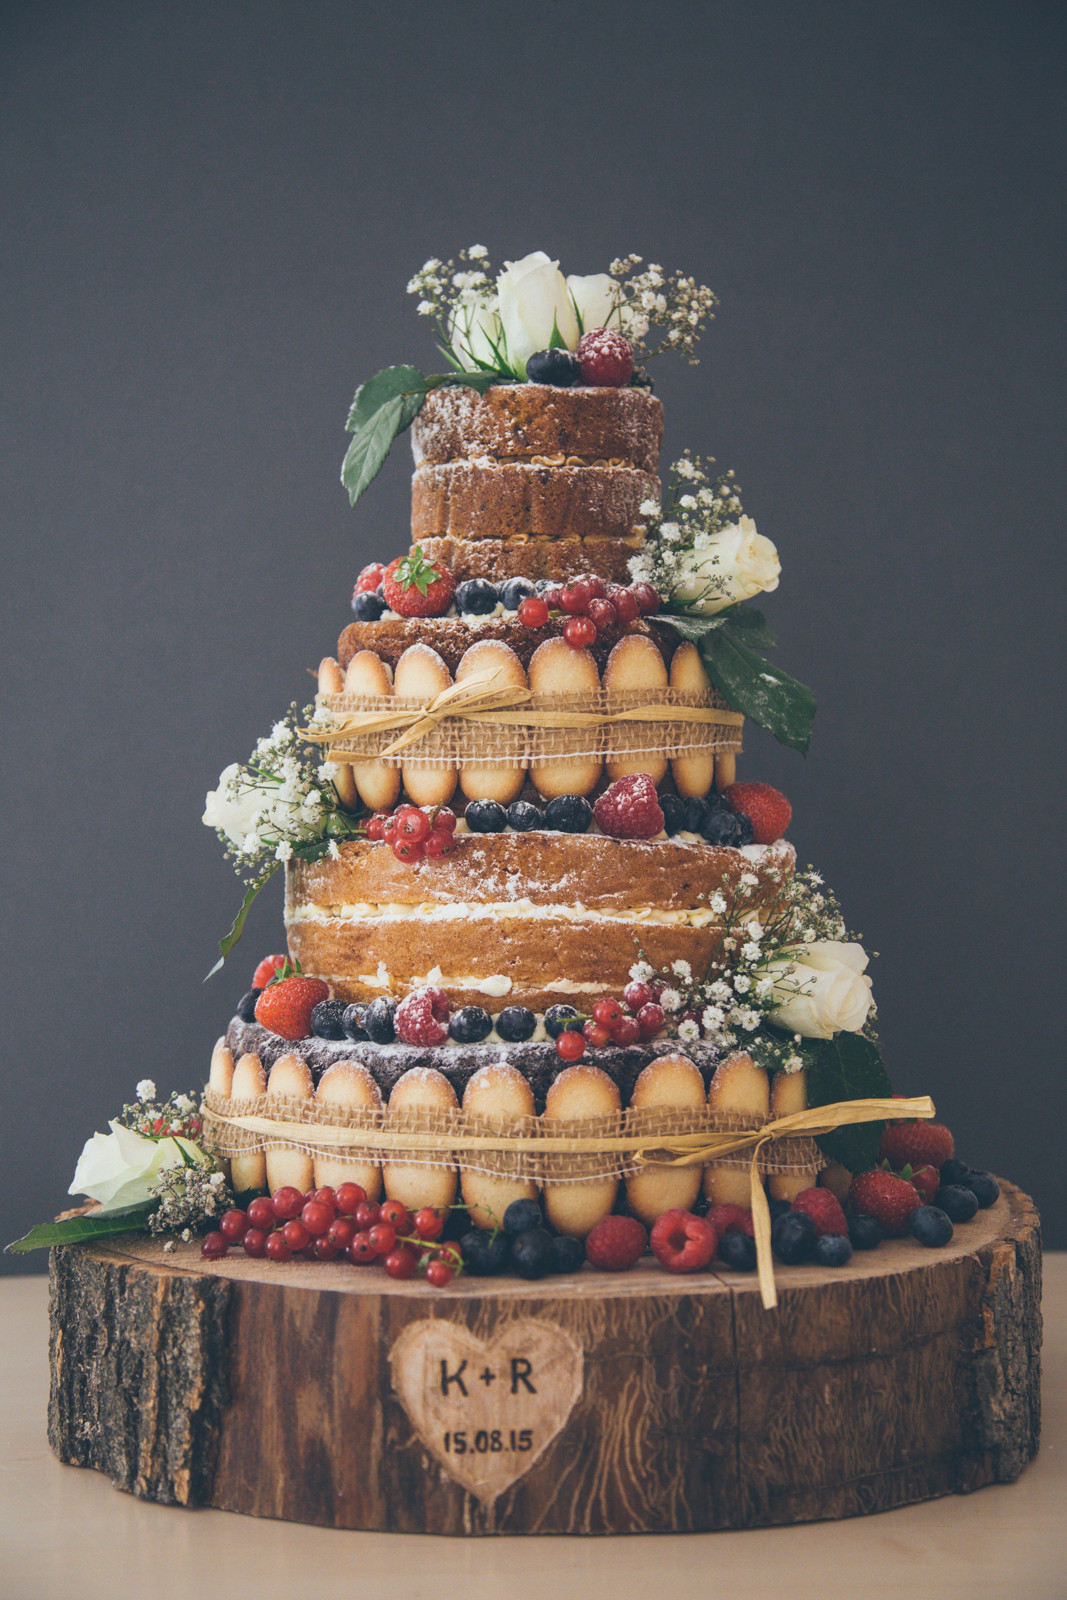 Wedding Cakes Themes
 Six Naked Wedding Cake Ideas